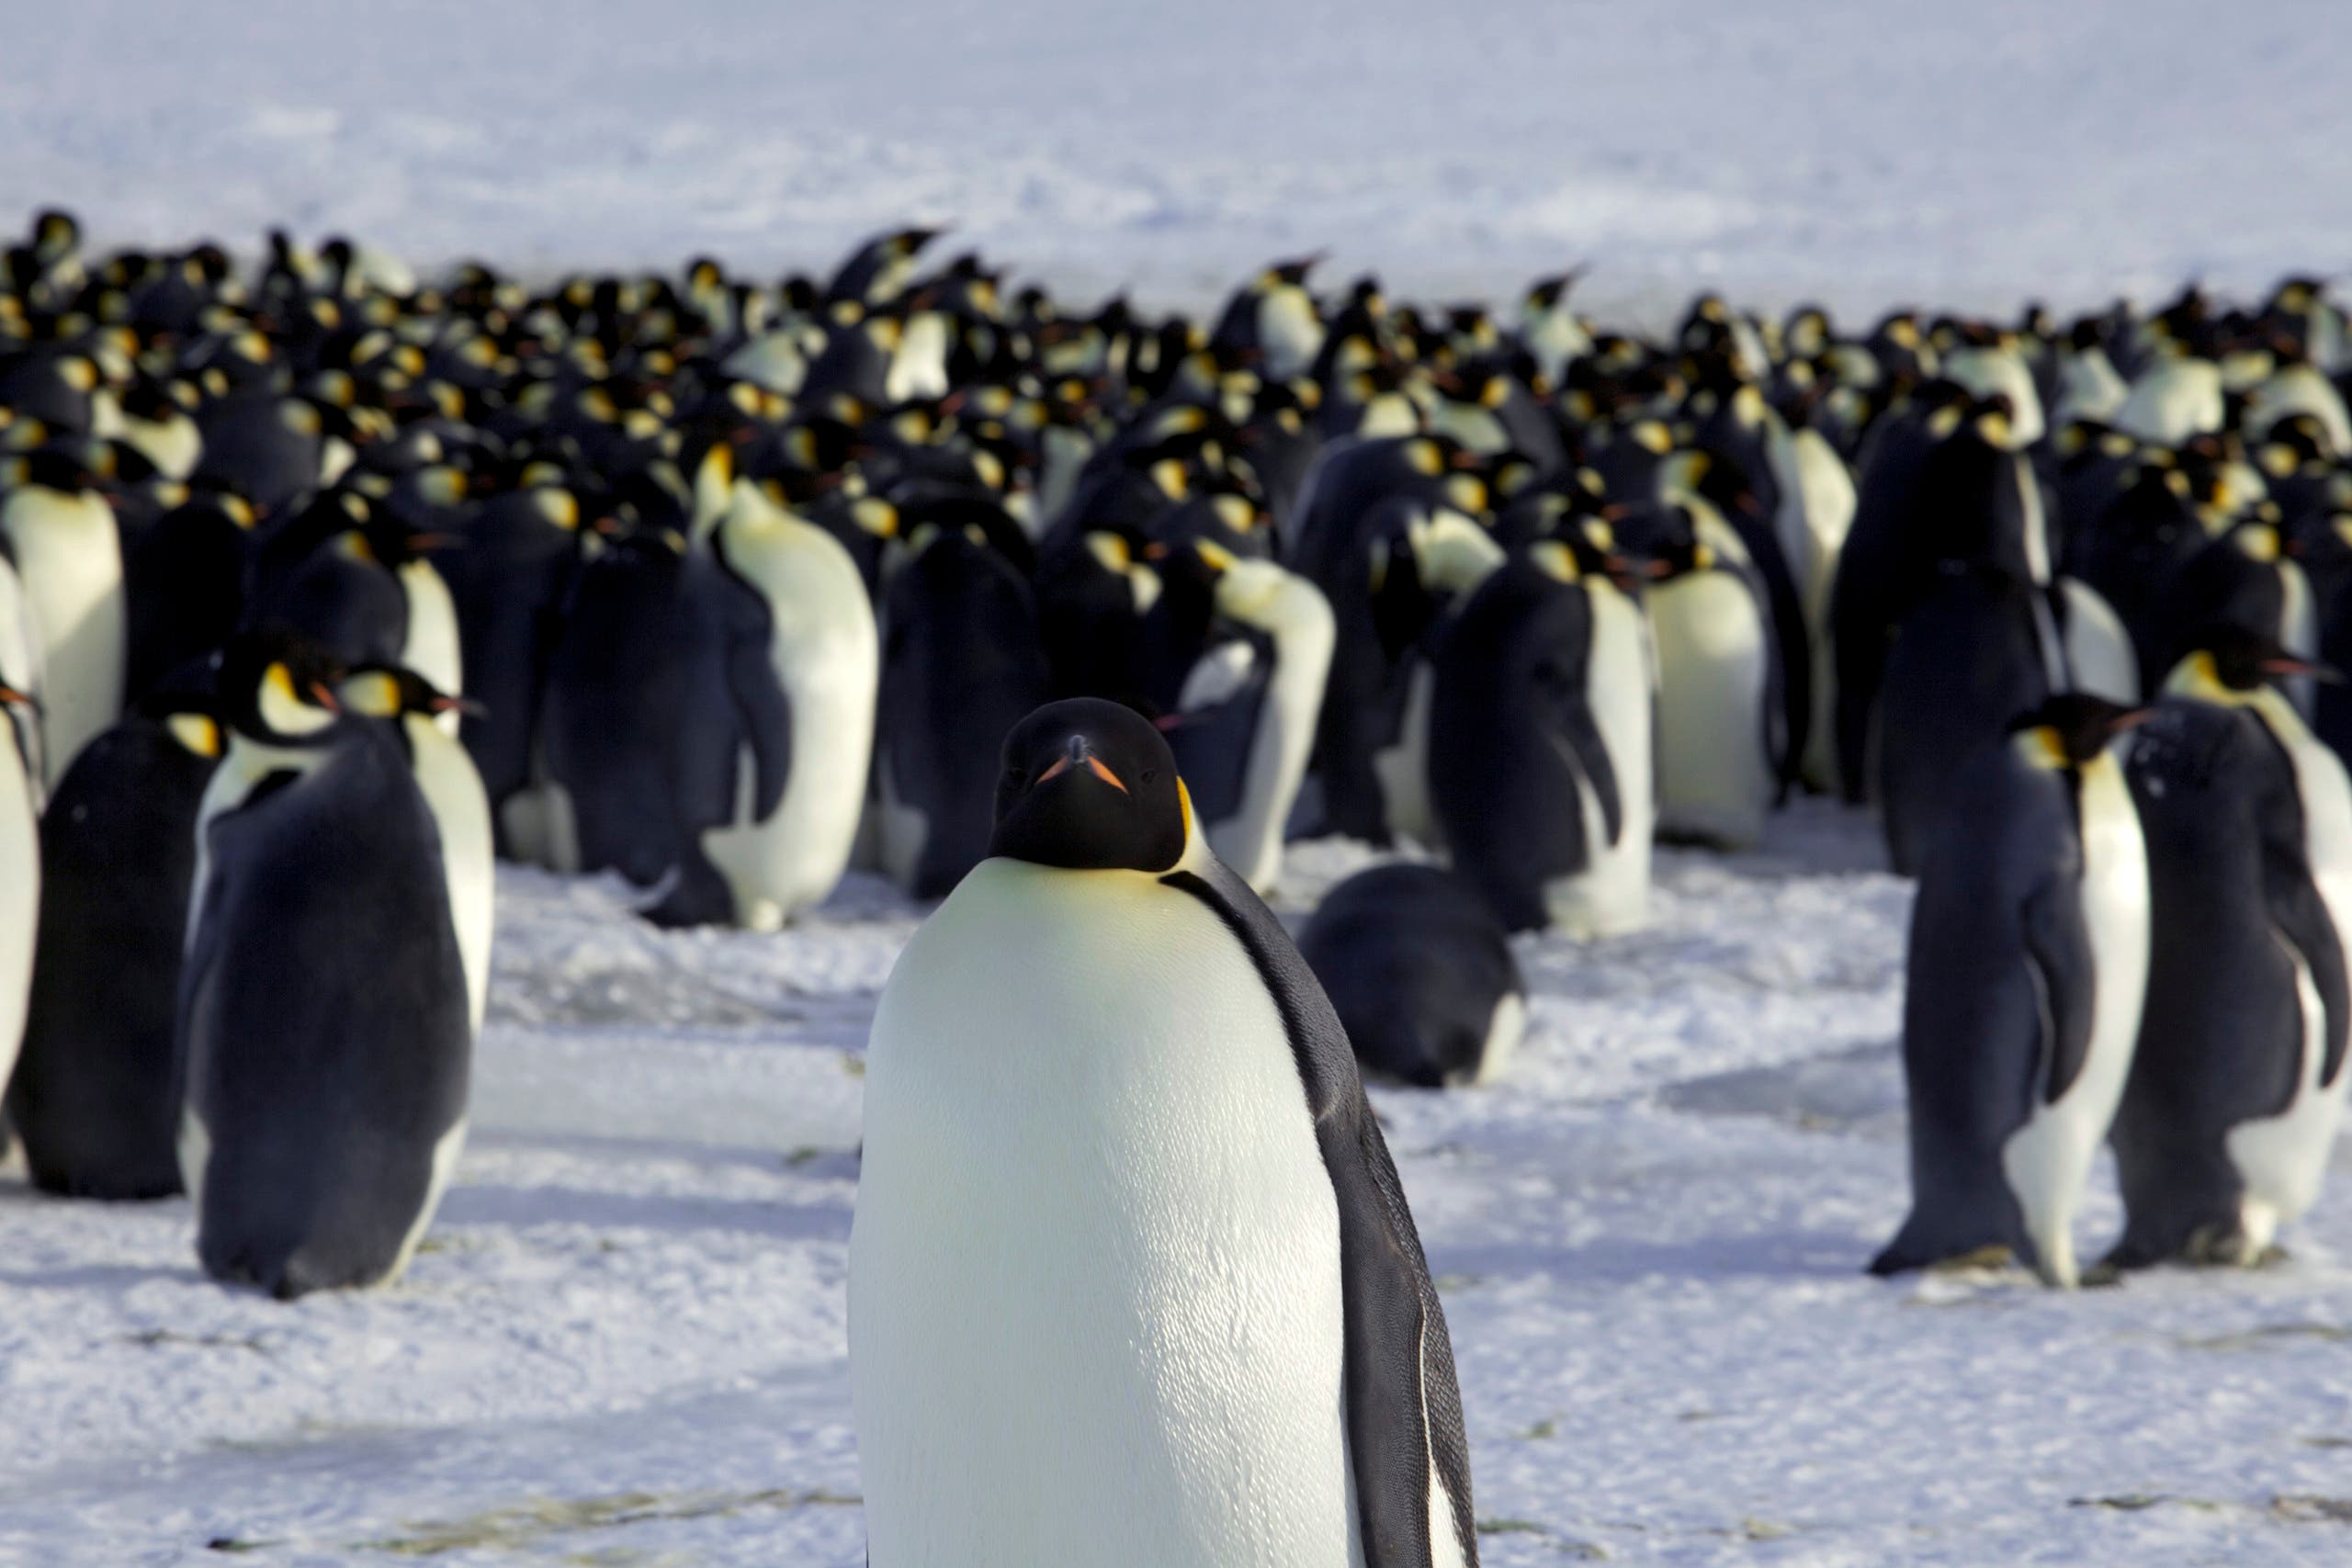 Emperor penguins are seen in Dumont d'Urville, Antarctica April 10, 2012. (Reuters)